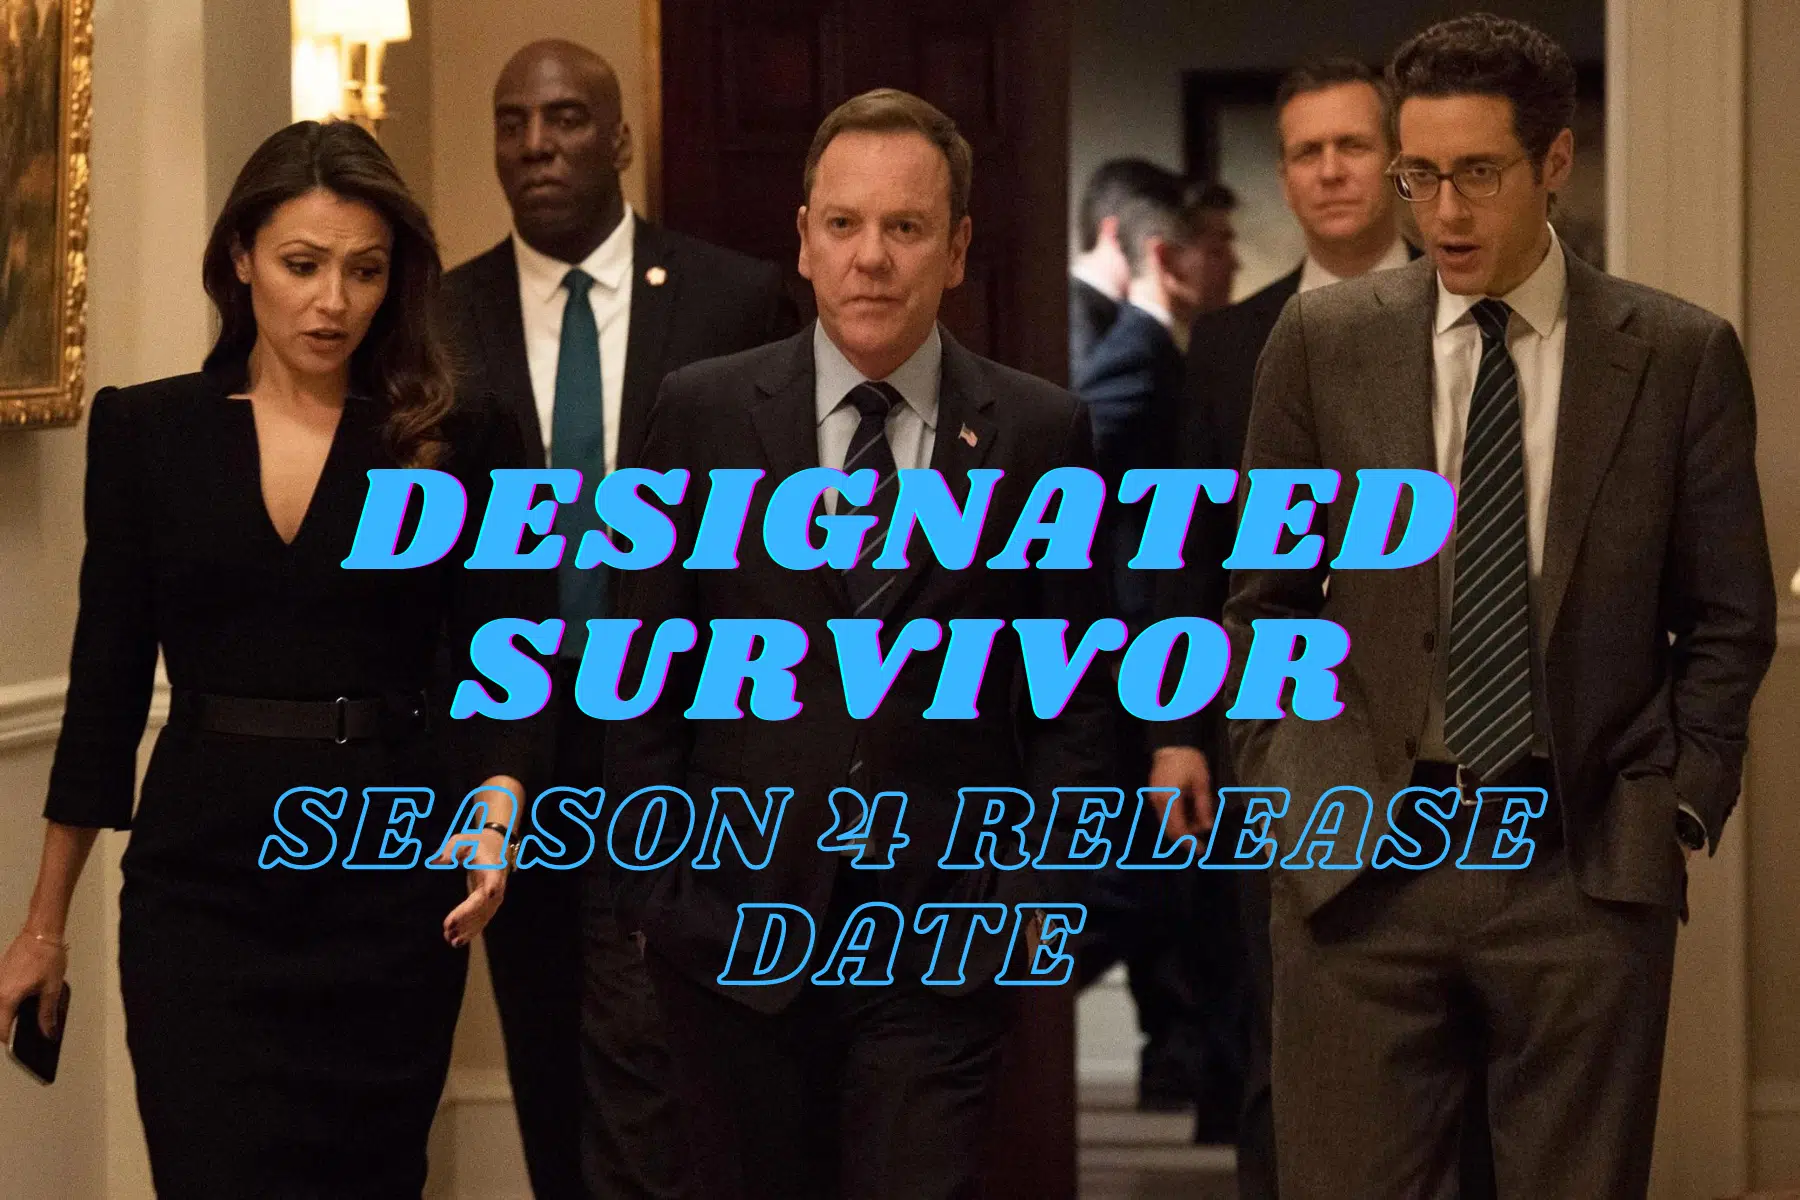 Designated Survivor Season 4 Release Date, Trailer - Is It Canceled?